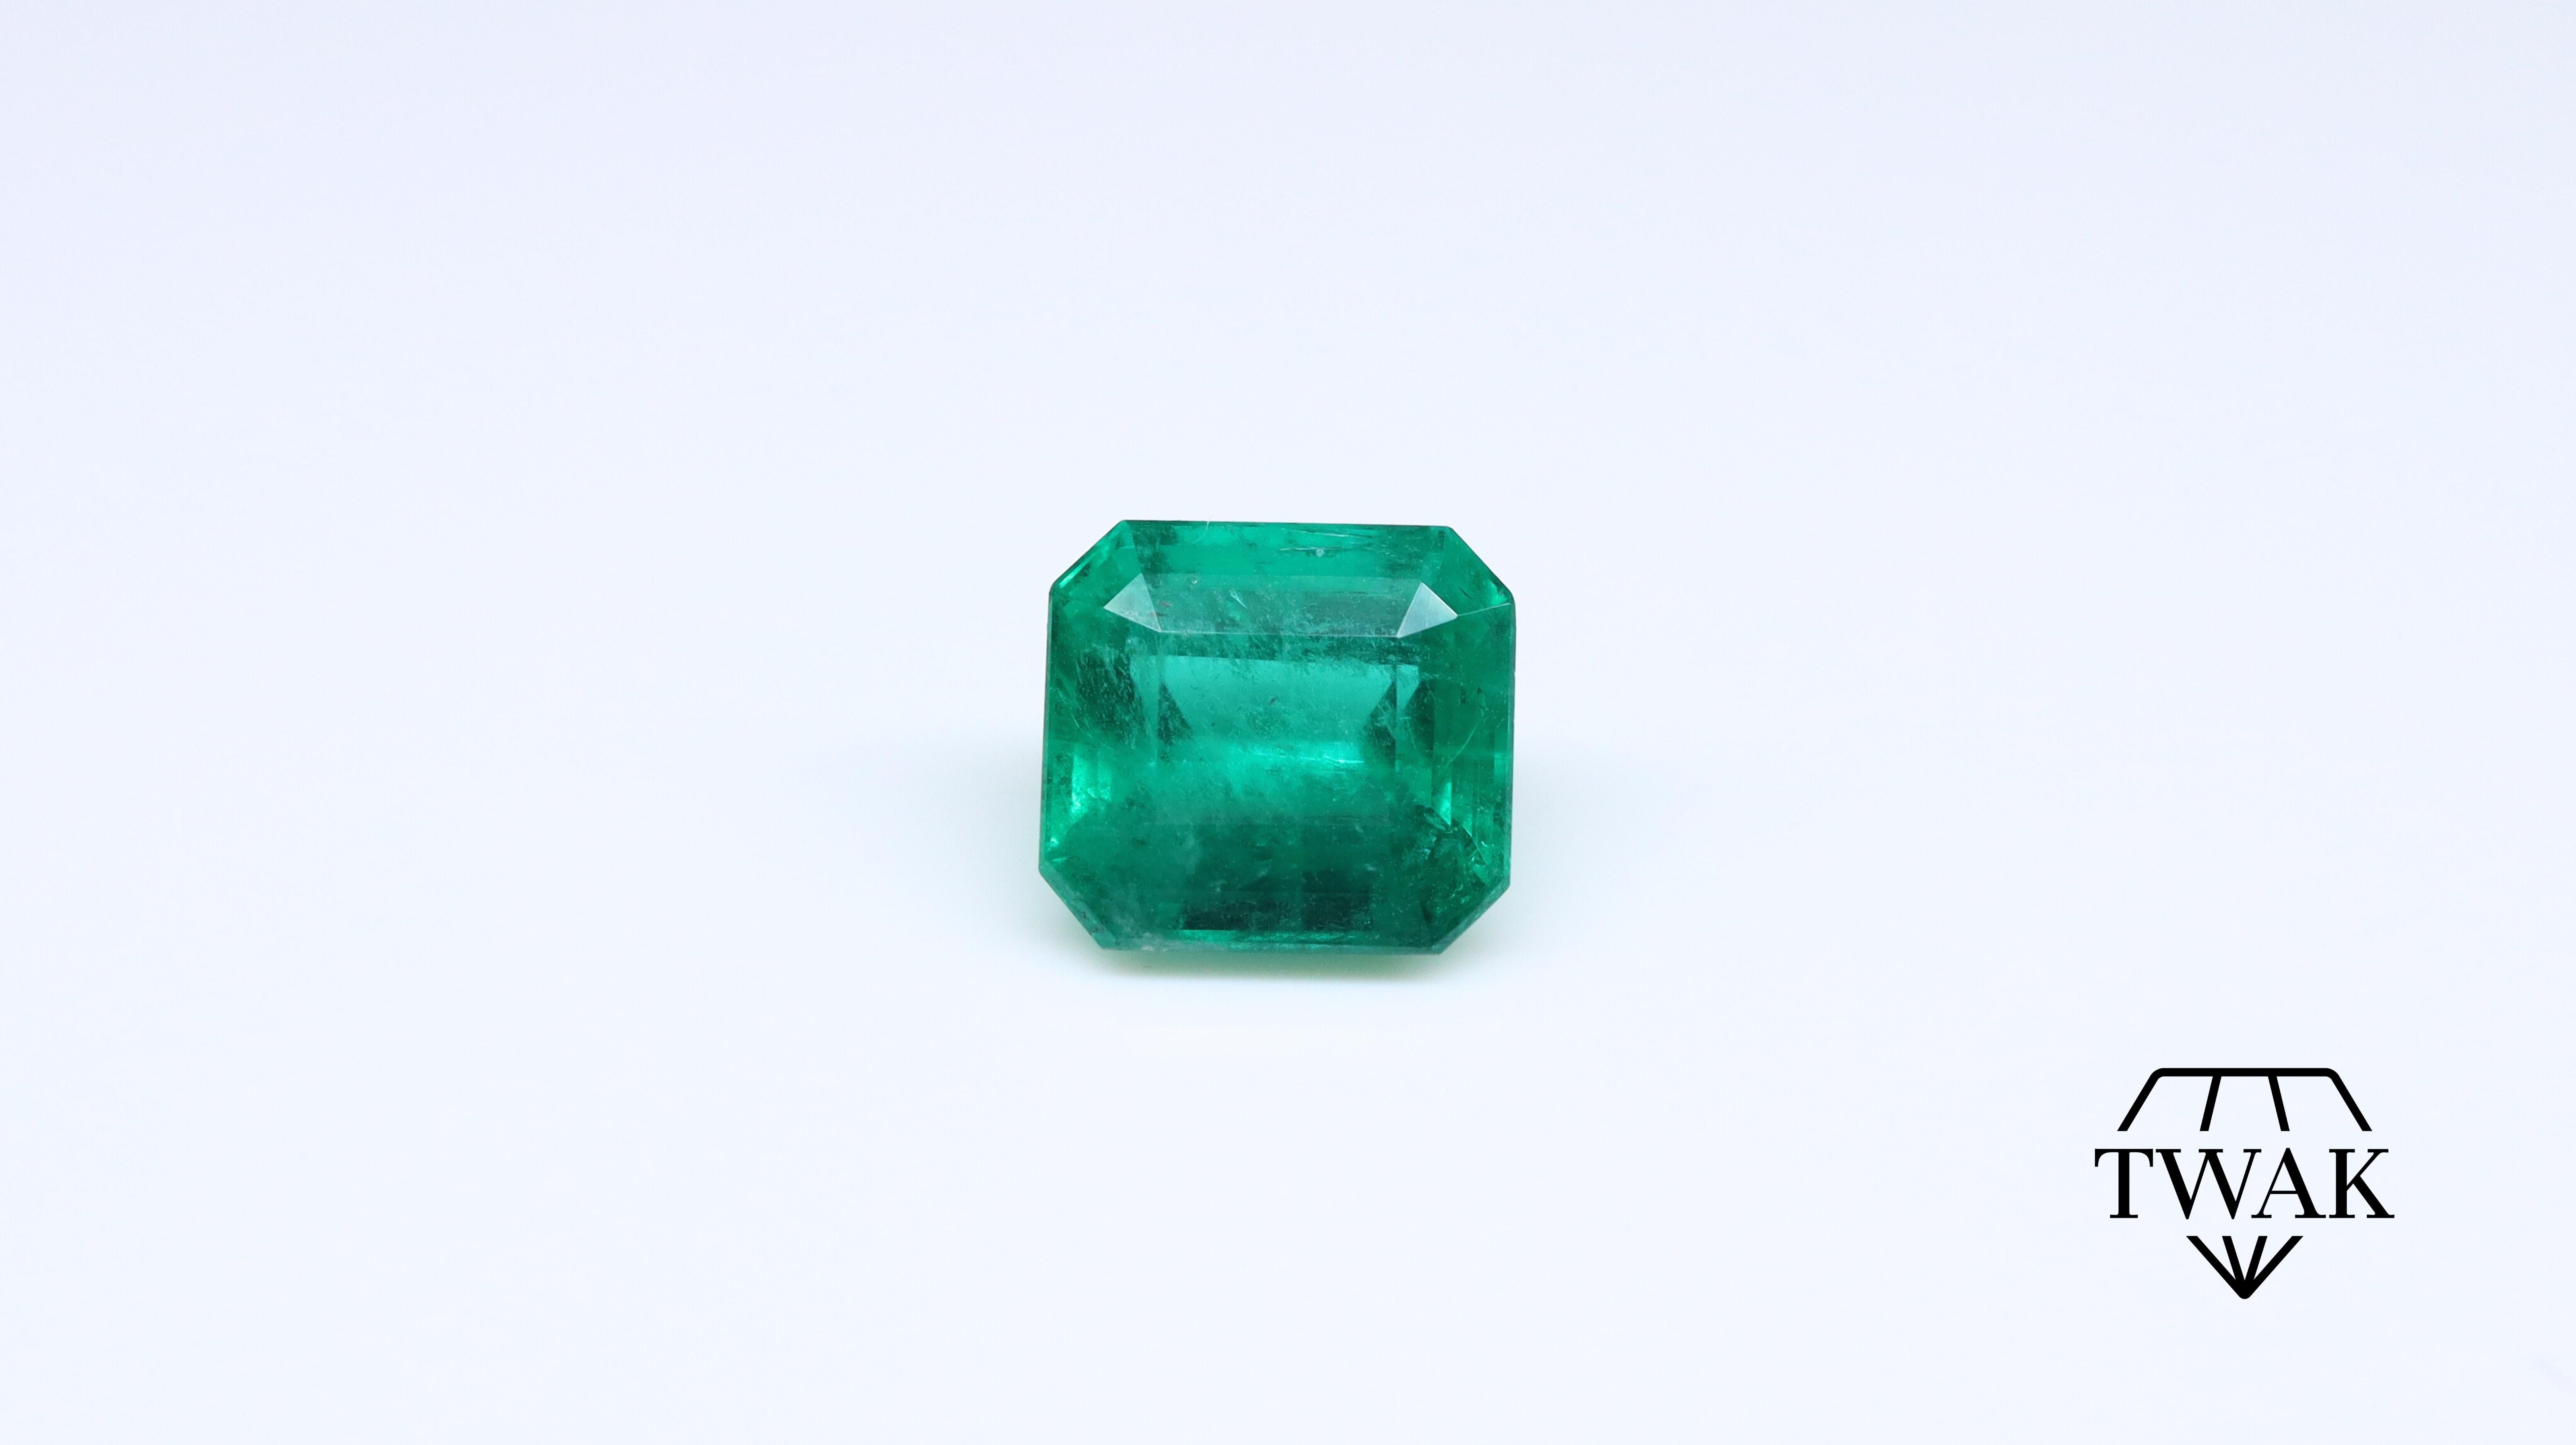 Ein schöner Smaragd mit ausgezeichneter Farbe, Kristall und Sättigung.

Details und Beschreibung:
Abmessungen: 8,08 x 8,72 x 5,73 mm
Gewicht: 2,79ct
Farbe: Intensives / Tiefes Grün 
Behandlung: Opticom

Smaragde sind von Natur aus poröse Steine mit